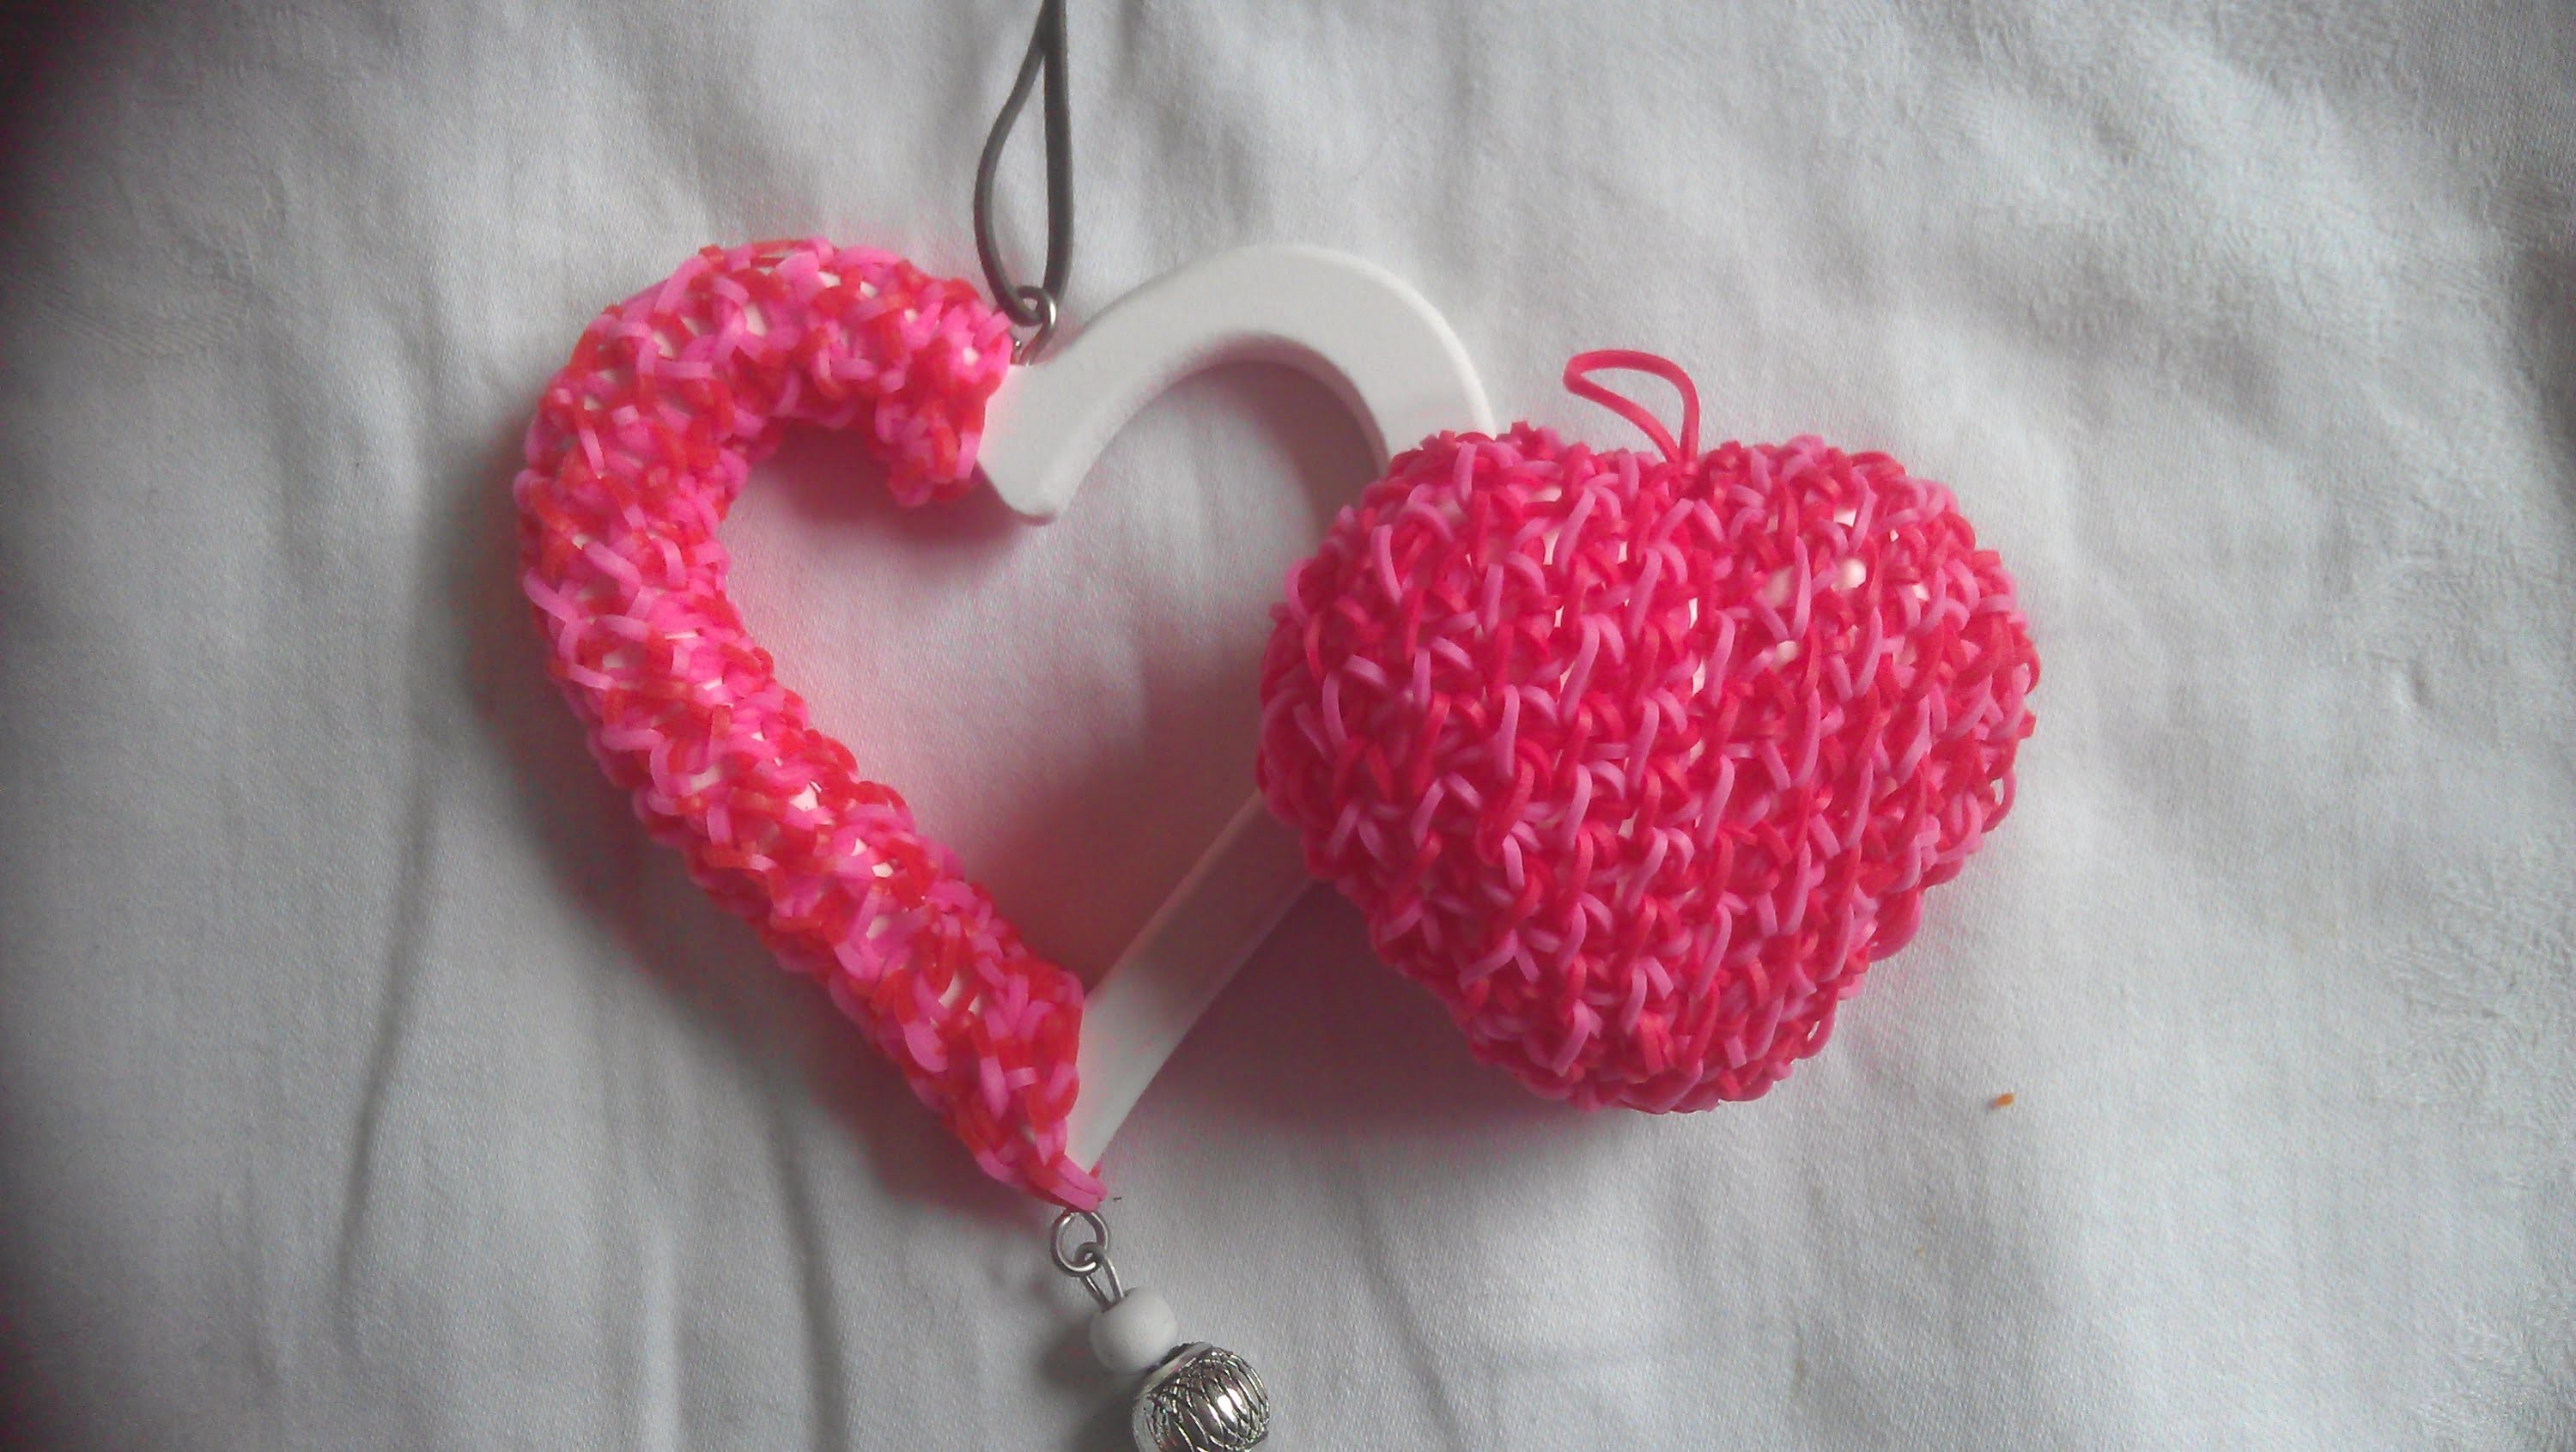 Rainbow loom Nederlands: Valentijnsdag, loom hart met piepschuim hartje. styropor (original design)